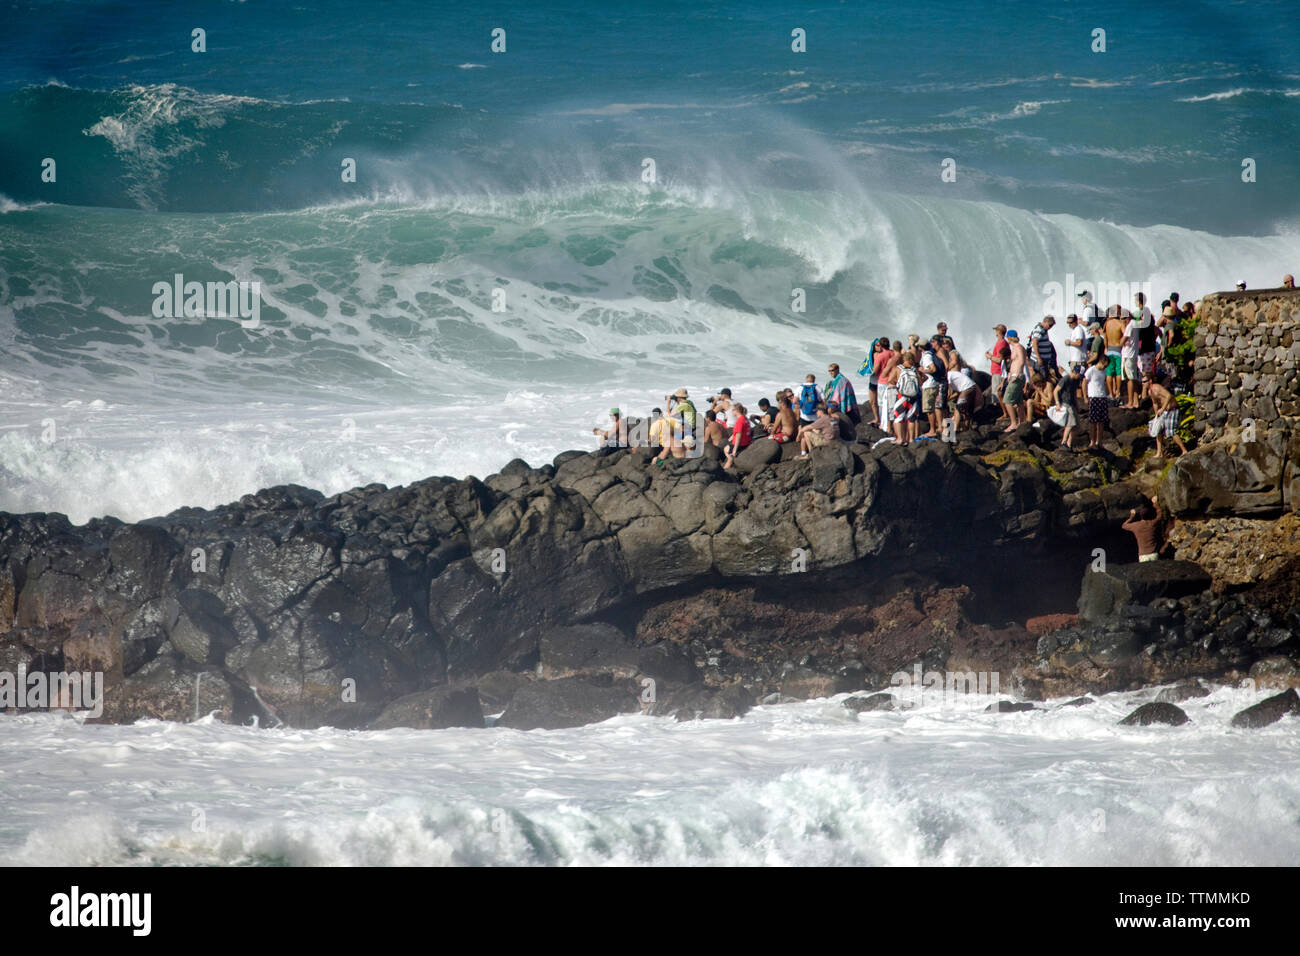 USA, Hawaii, Oahu, groupe de personnes regardant surfant à Waimea Bay Banque D'Images